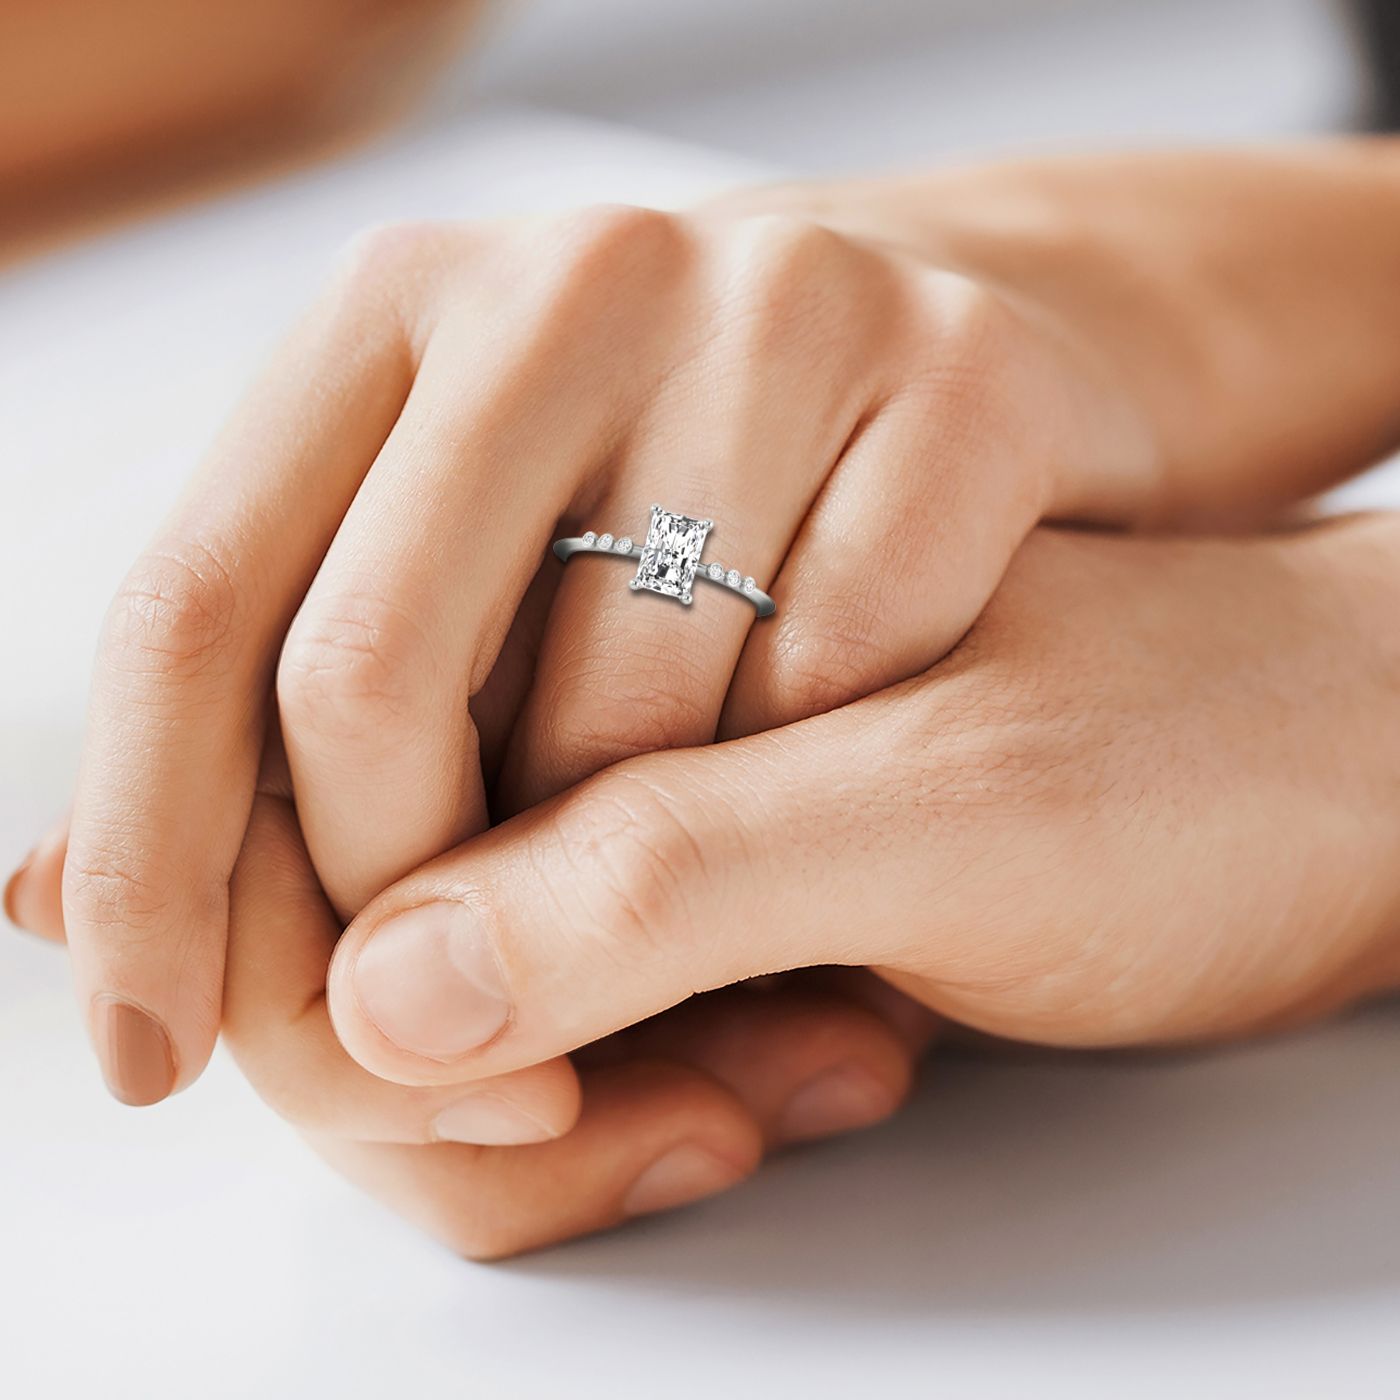 14kw Radiant Engagement Ring With 6 Bezel Set Round Diamonds On Shank